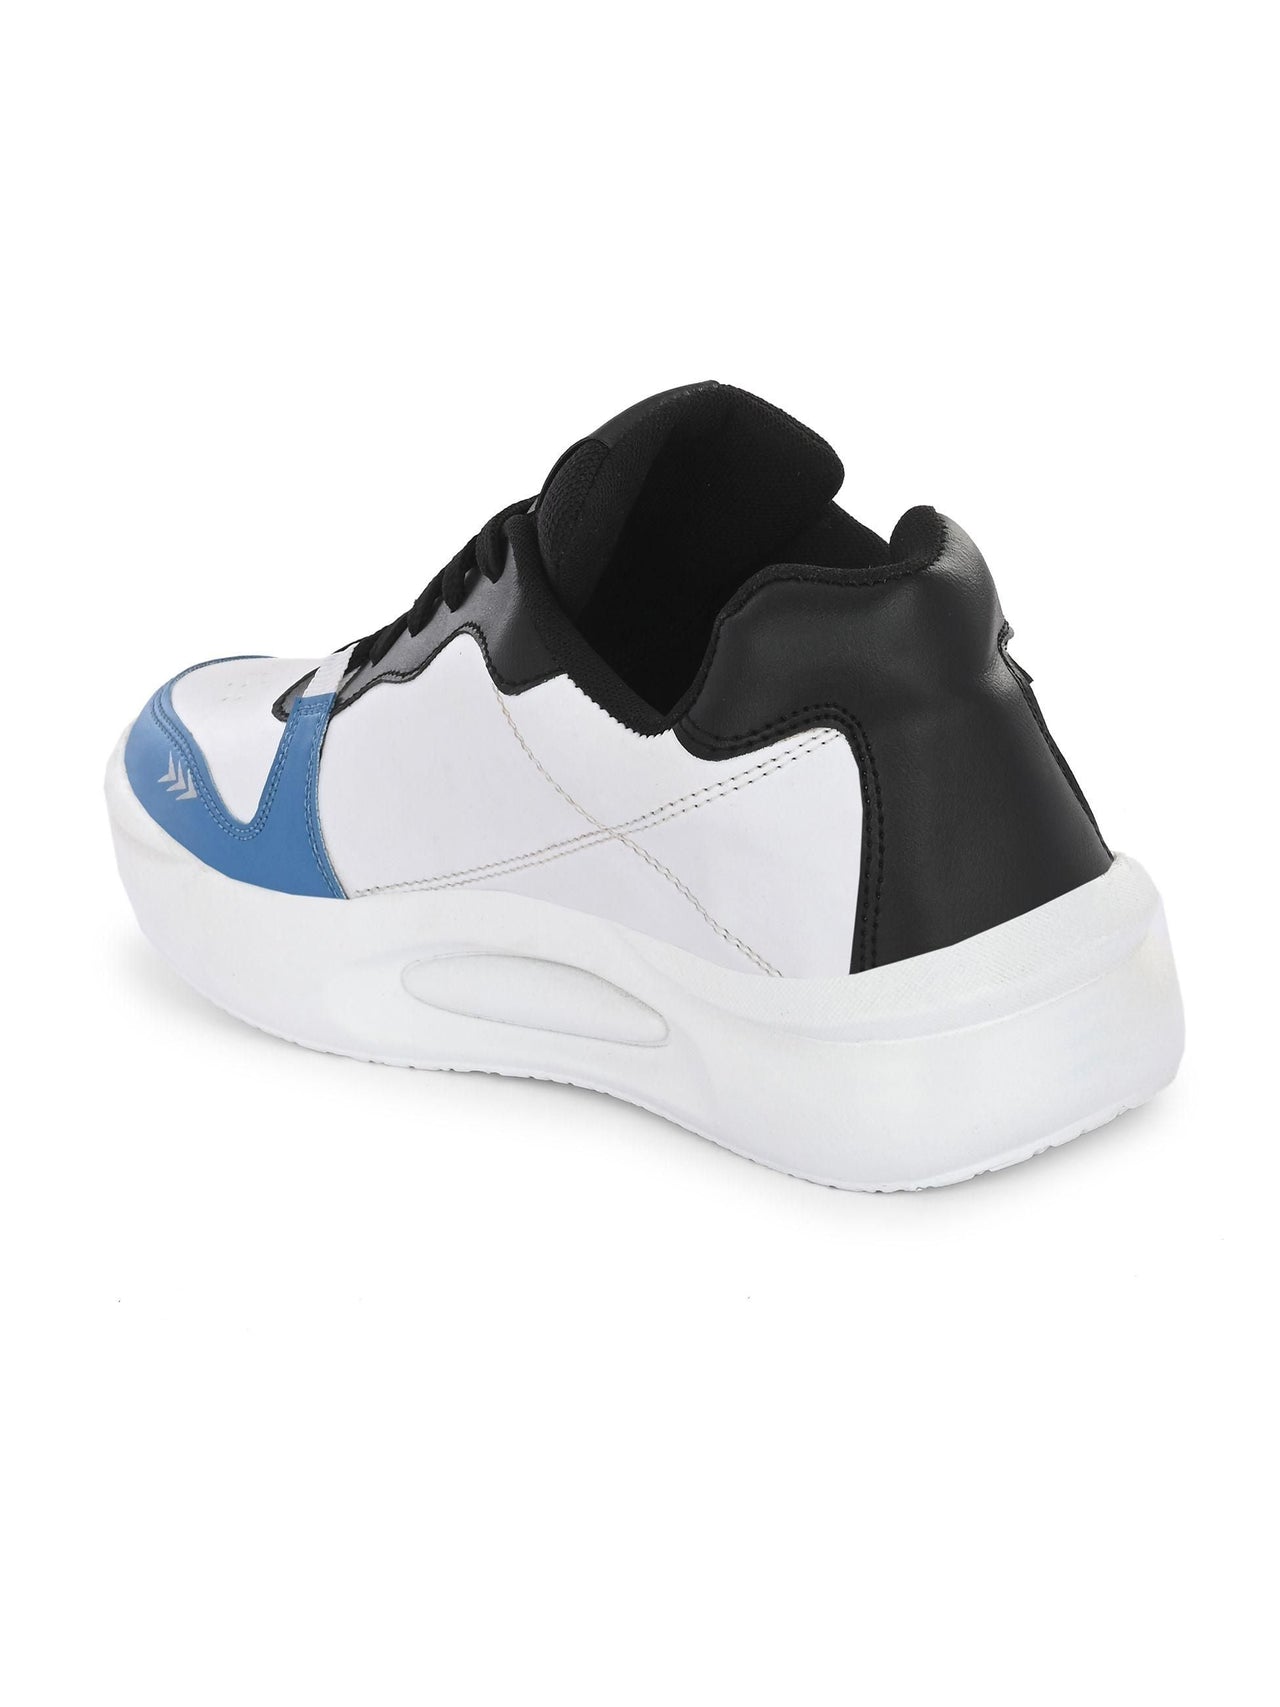 Bucik Men's White Synthetic Leather Lace-Up Sport Shoe